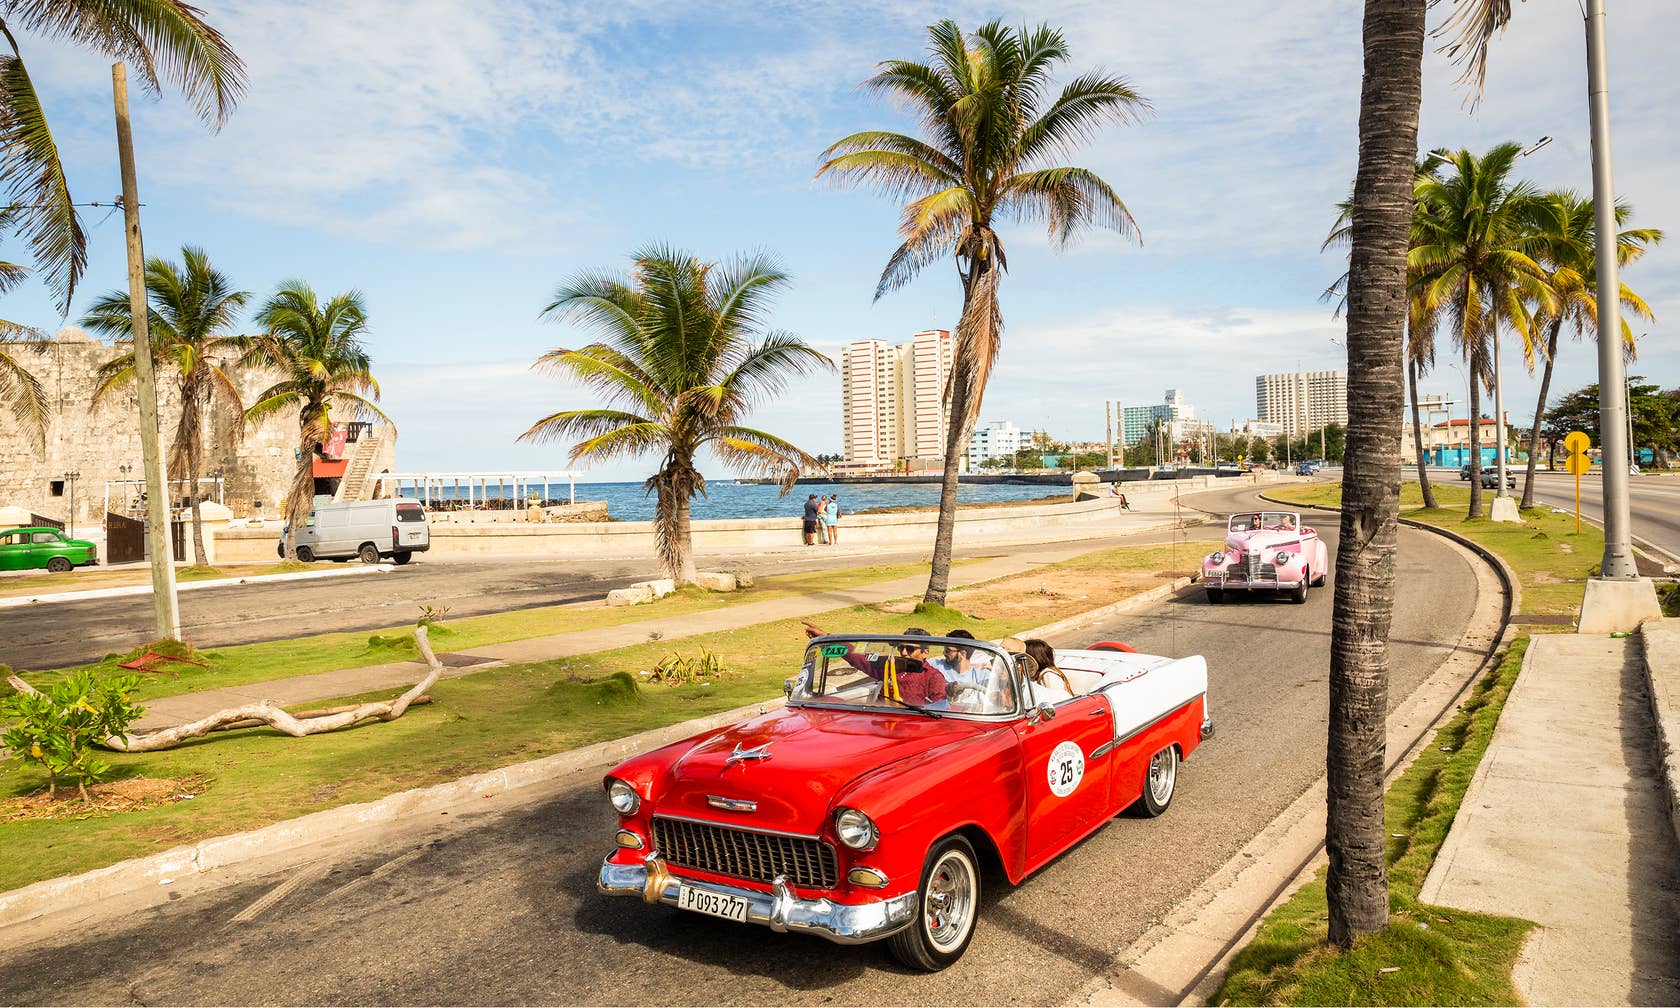 Vacation rentals in Cuba